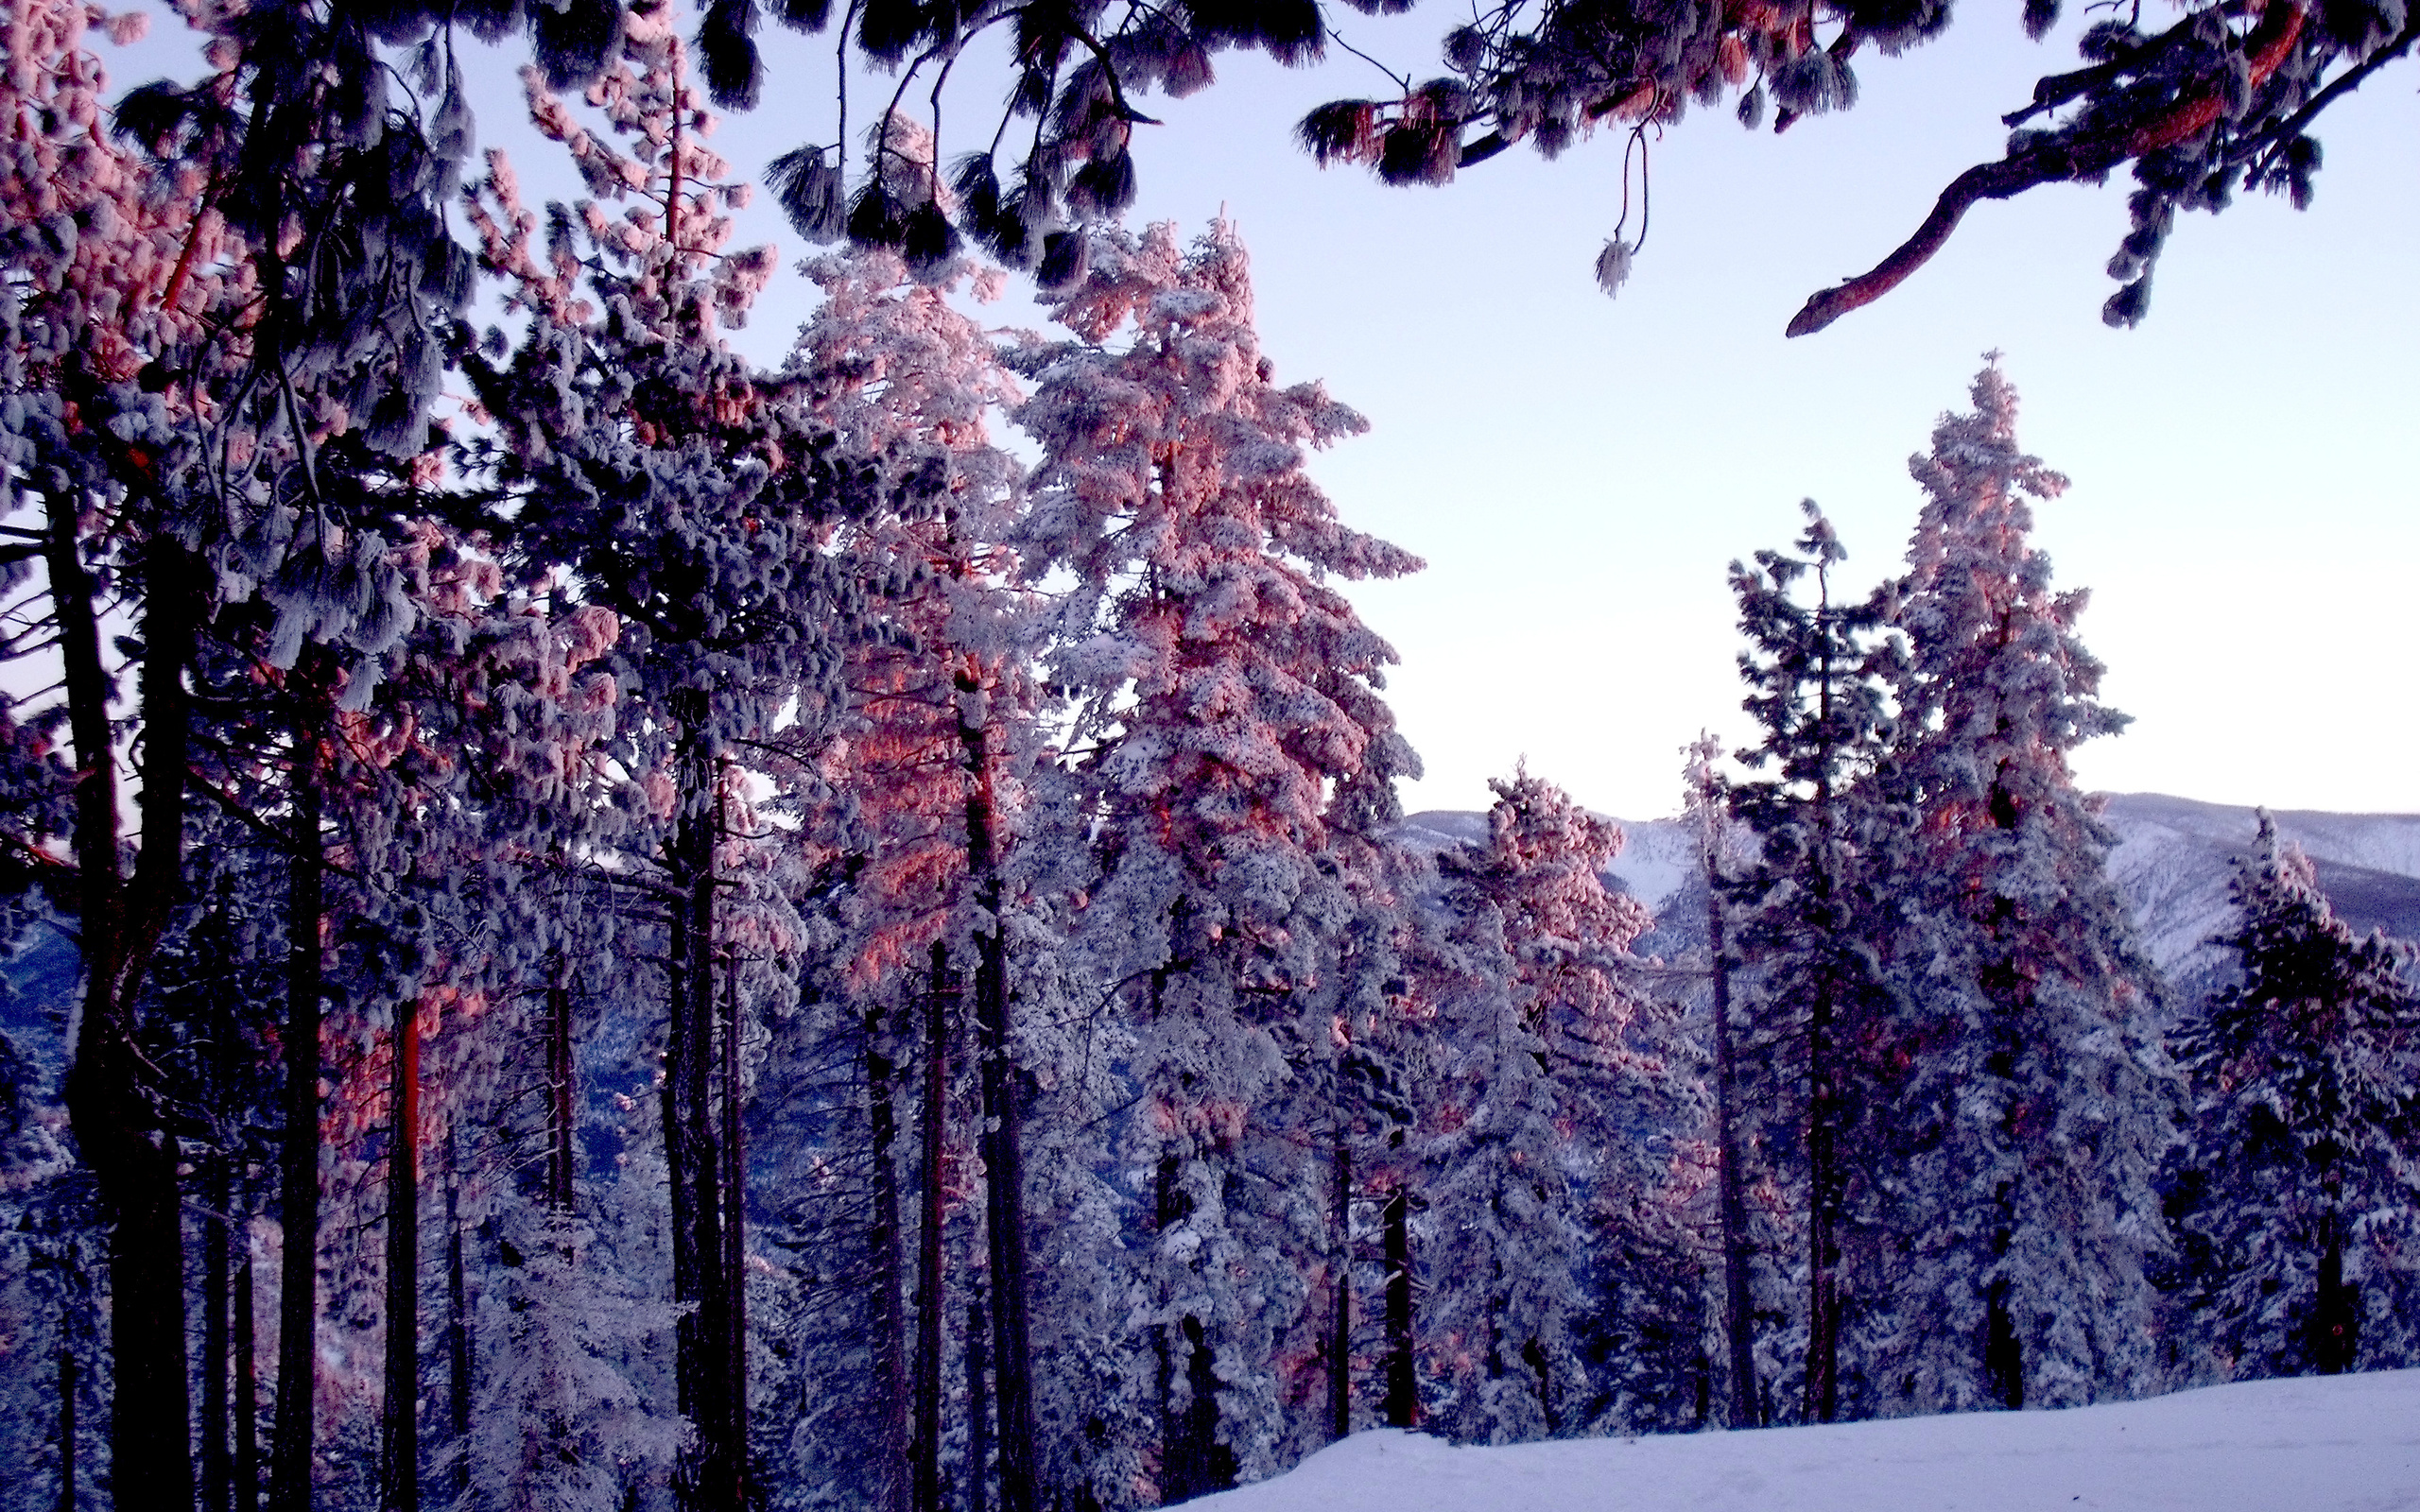 تصویر استوک فصل زمستان در عکس با کیفیت 4K برای دانلود پروفایل 